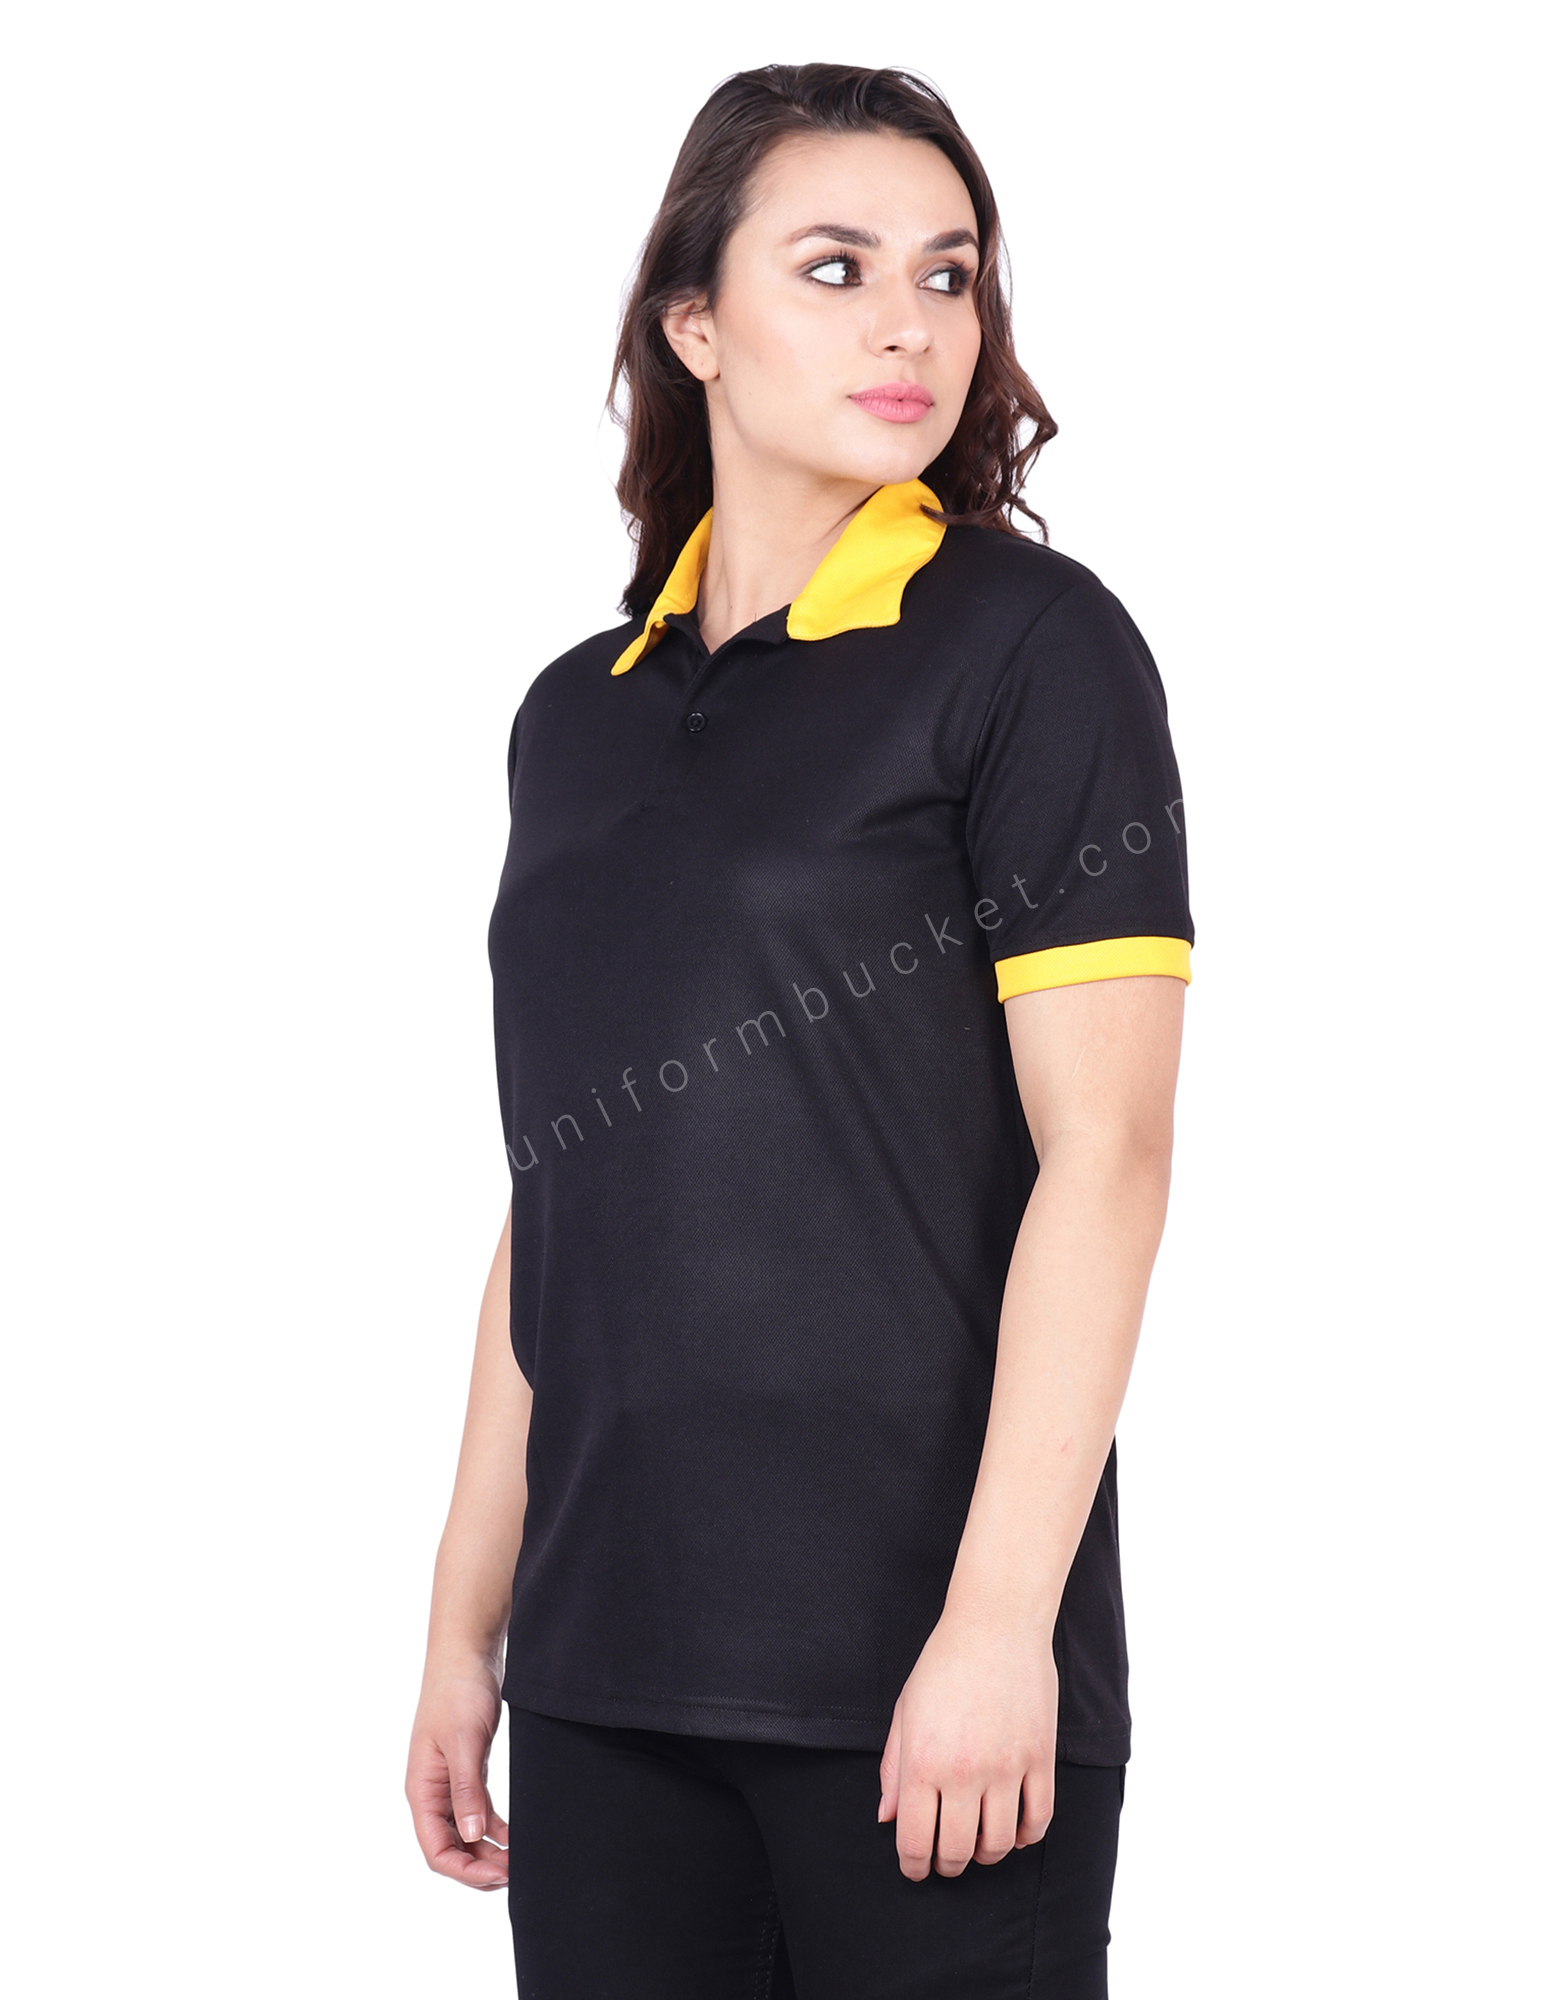 Buy Black & Yellow Designer Polo T-Shirt For Female Online @ Best ...